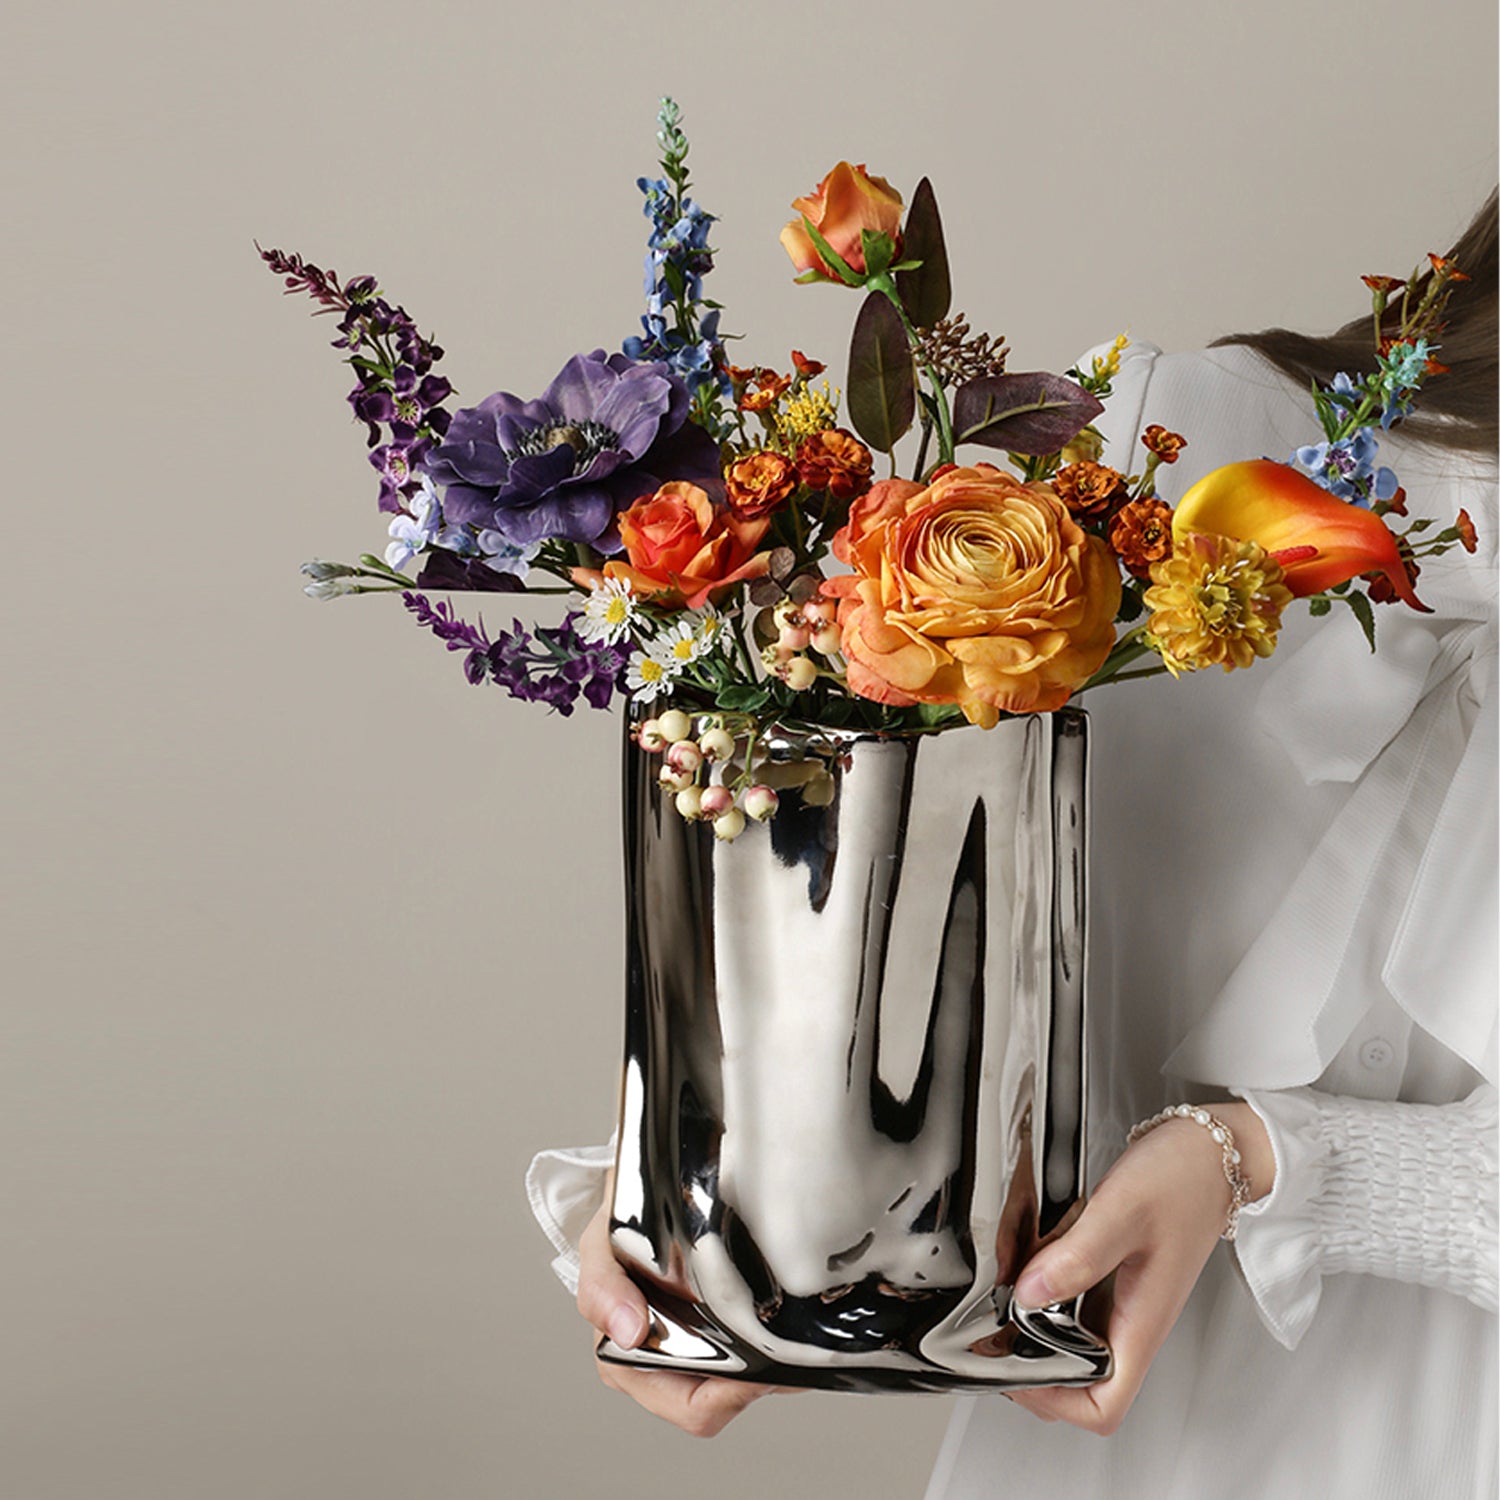 The Flower Vase – BAG&BONES